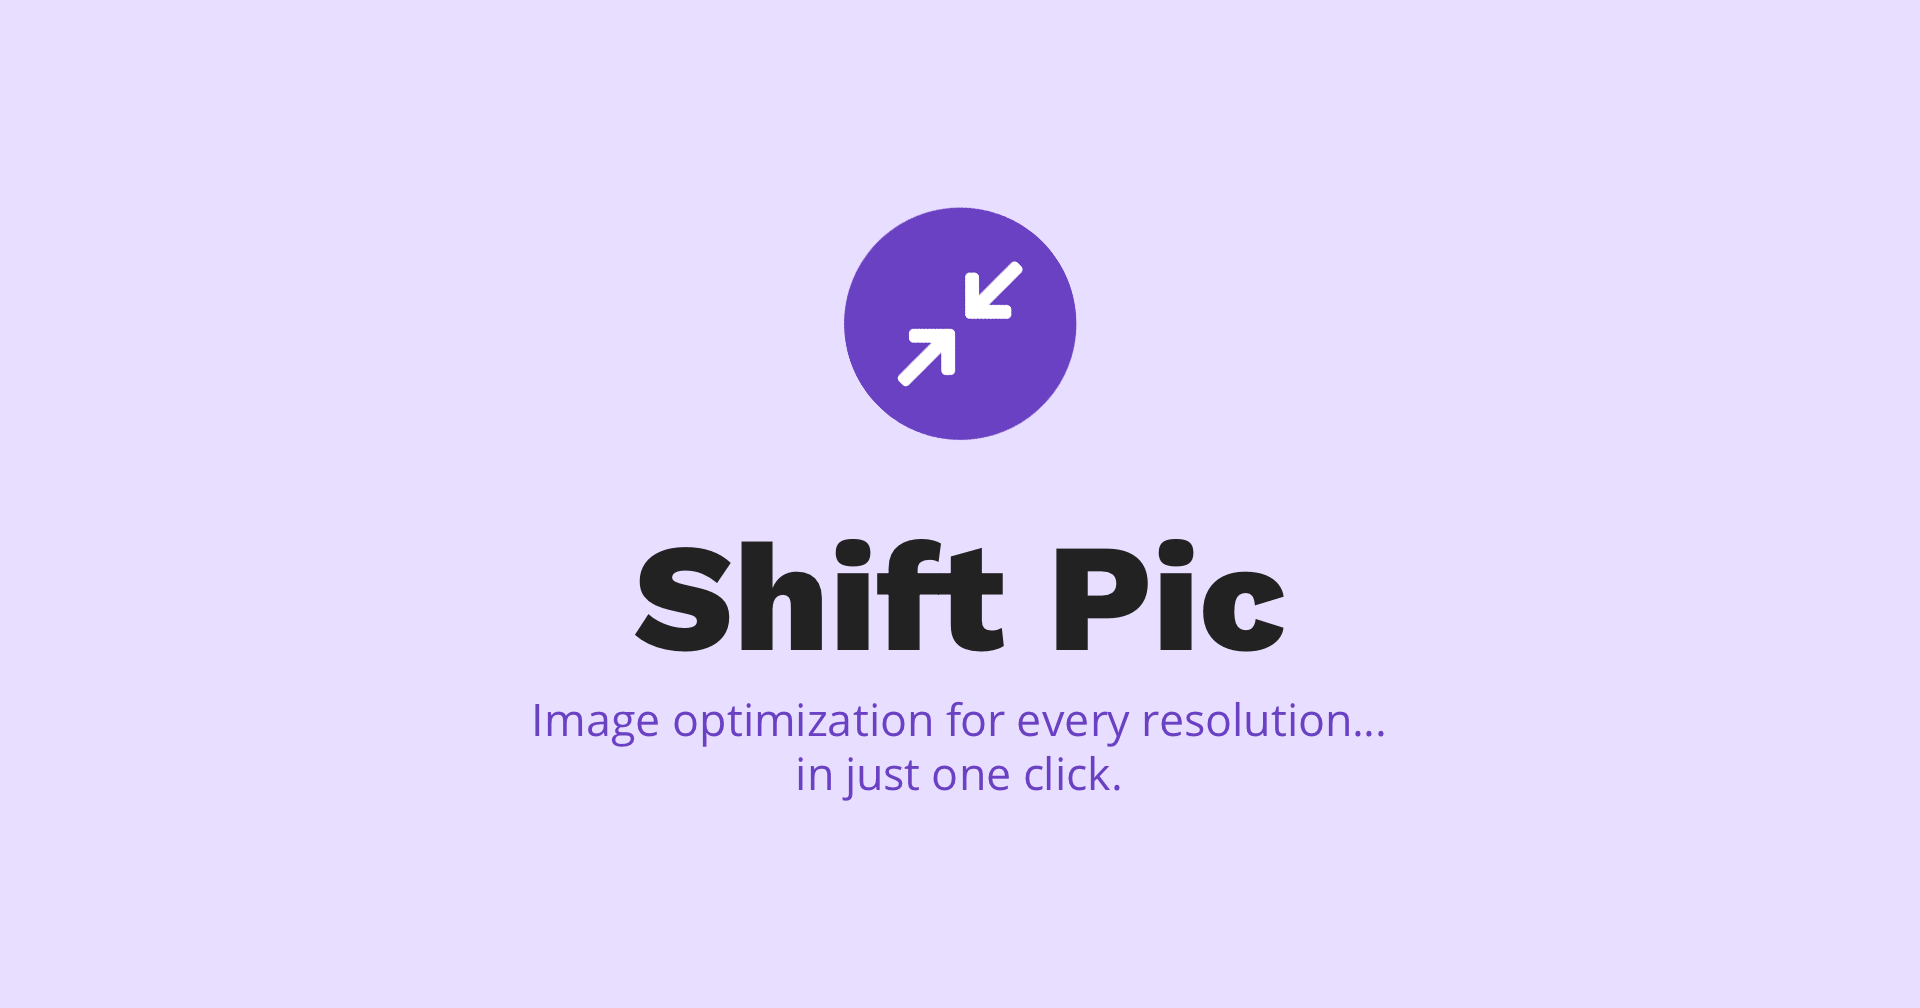 Shift Pic